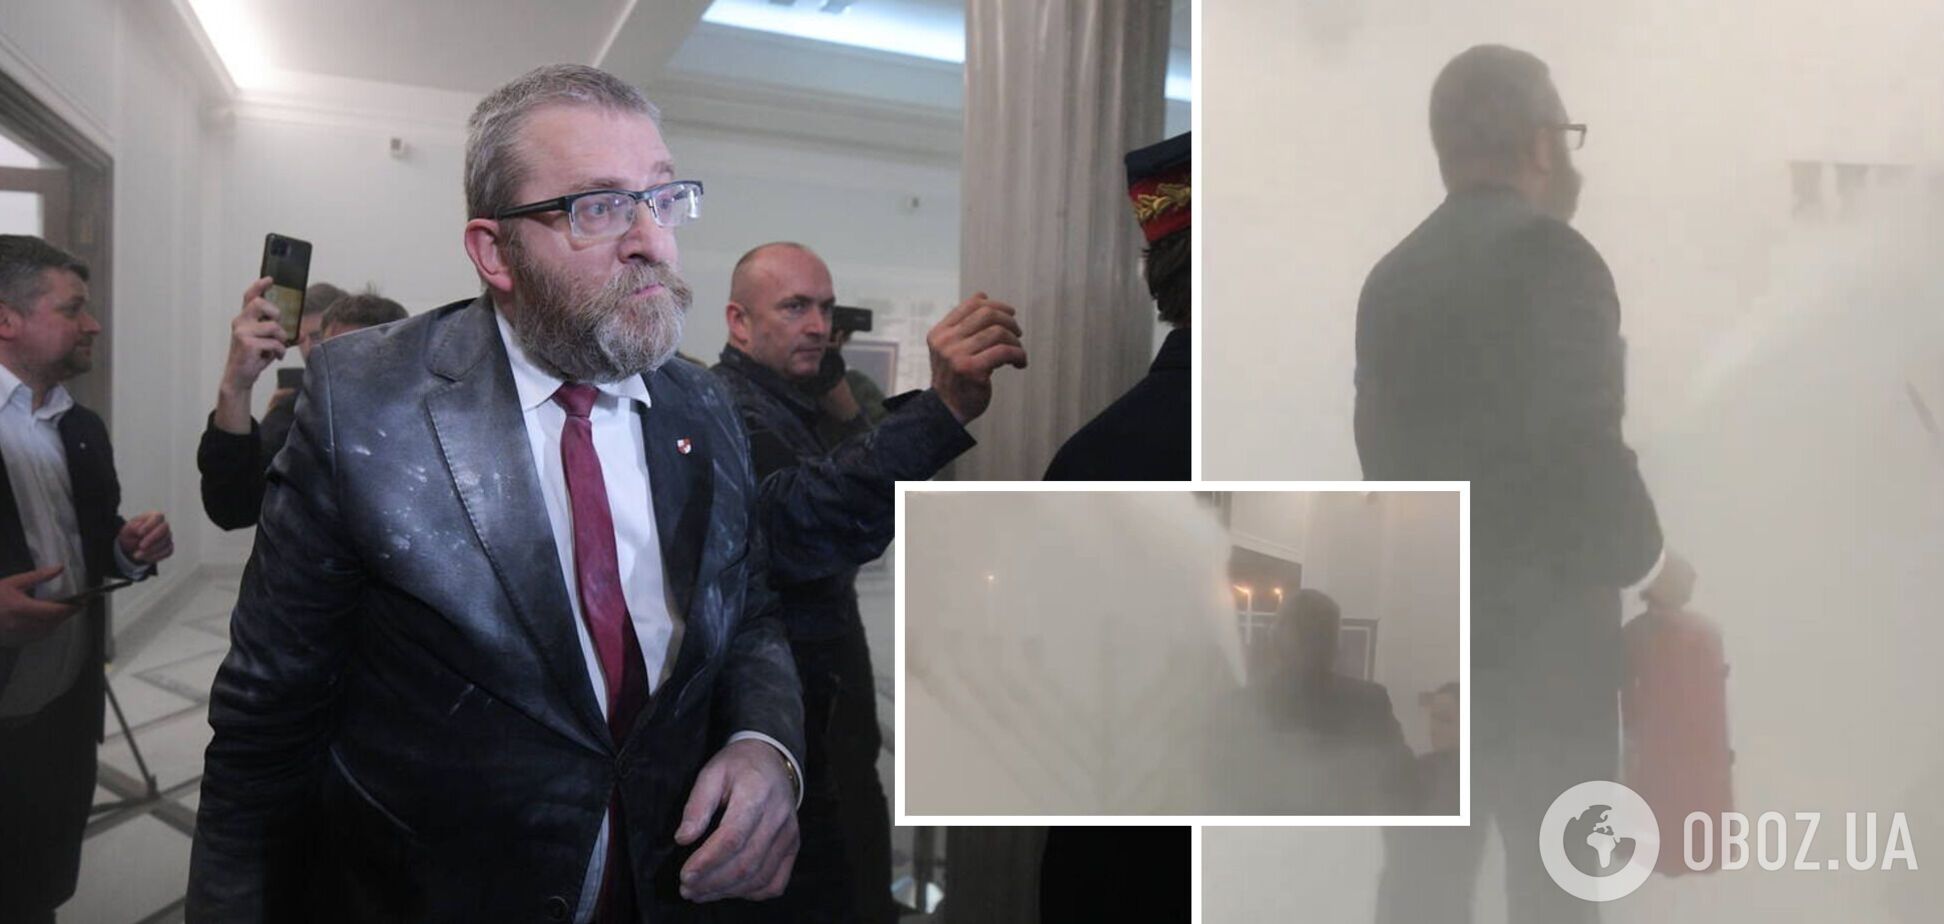 На засіданні польського Сейму проросійський депутат загасив з вогнегасника ханукальну менору. Відео